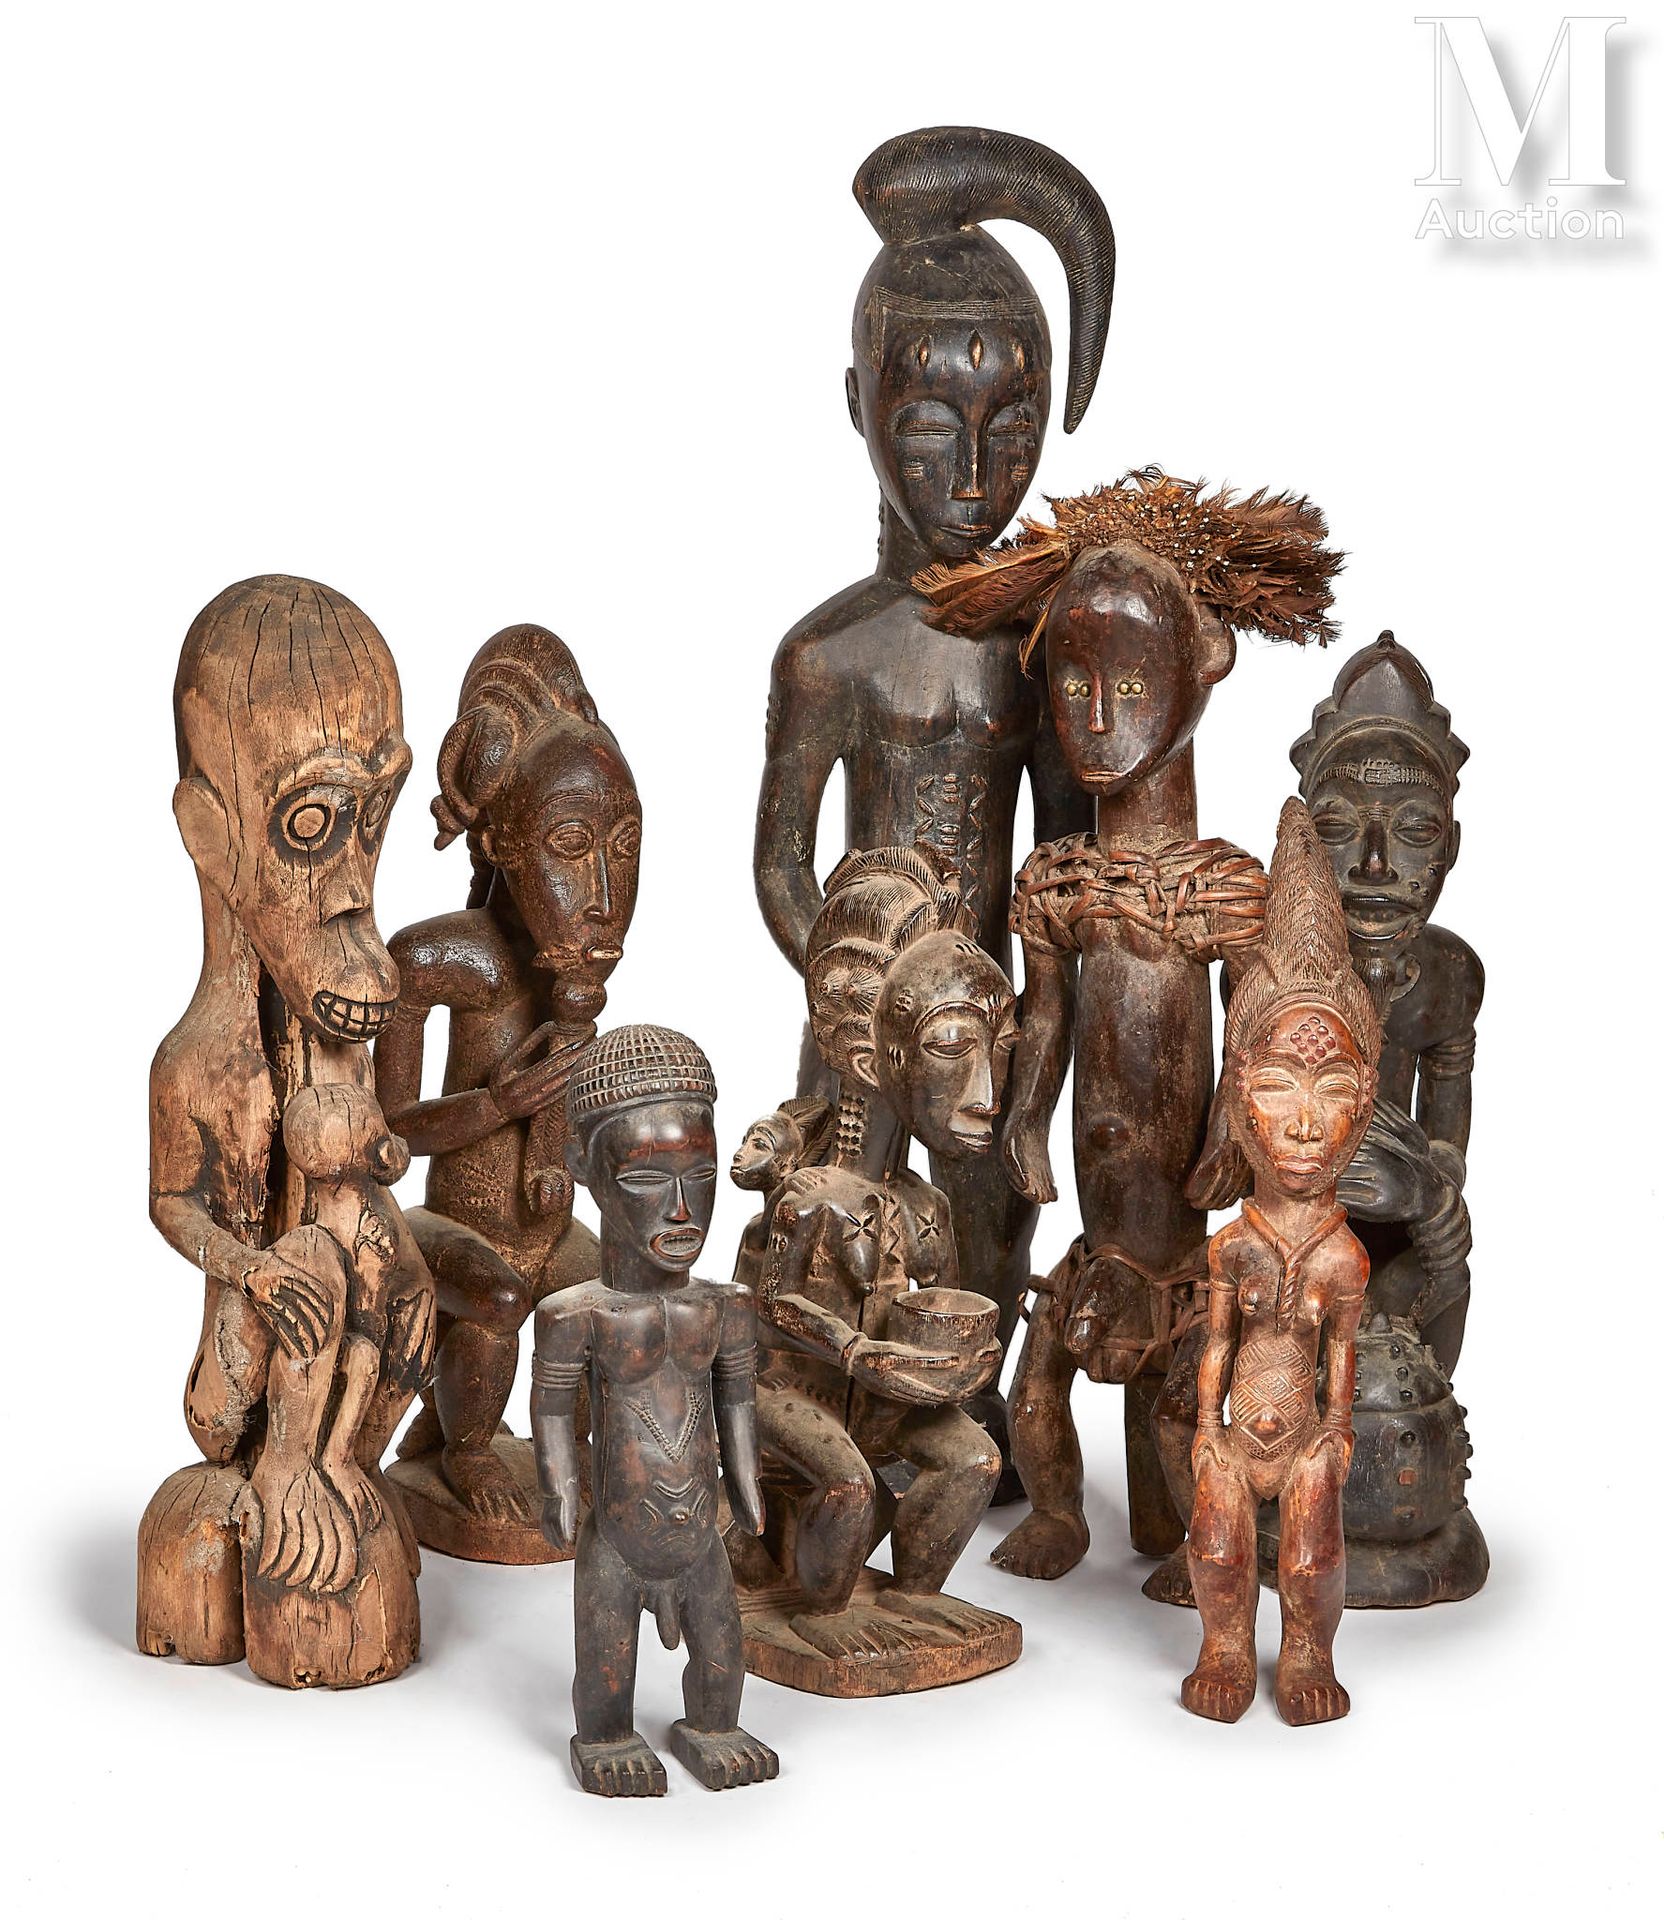 11 statues dans le style de l'Afrique ancestrale
Vendu en l'état